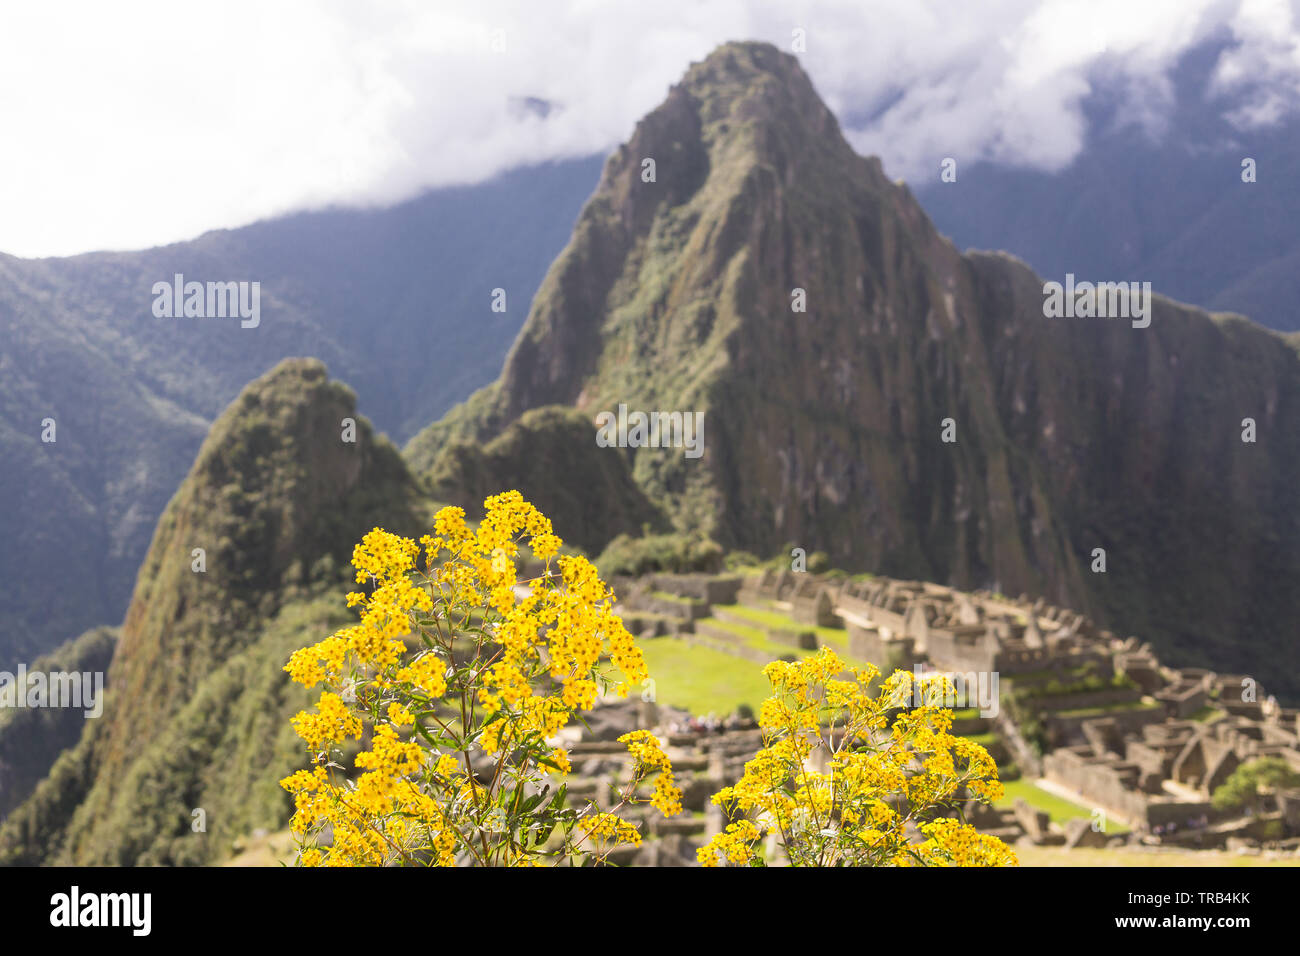 Machu Picchu Peru - Machu Picchu citadel and the Huayna Picchu Mountain in Peru, South America. Stock Photo